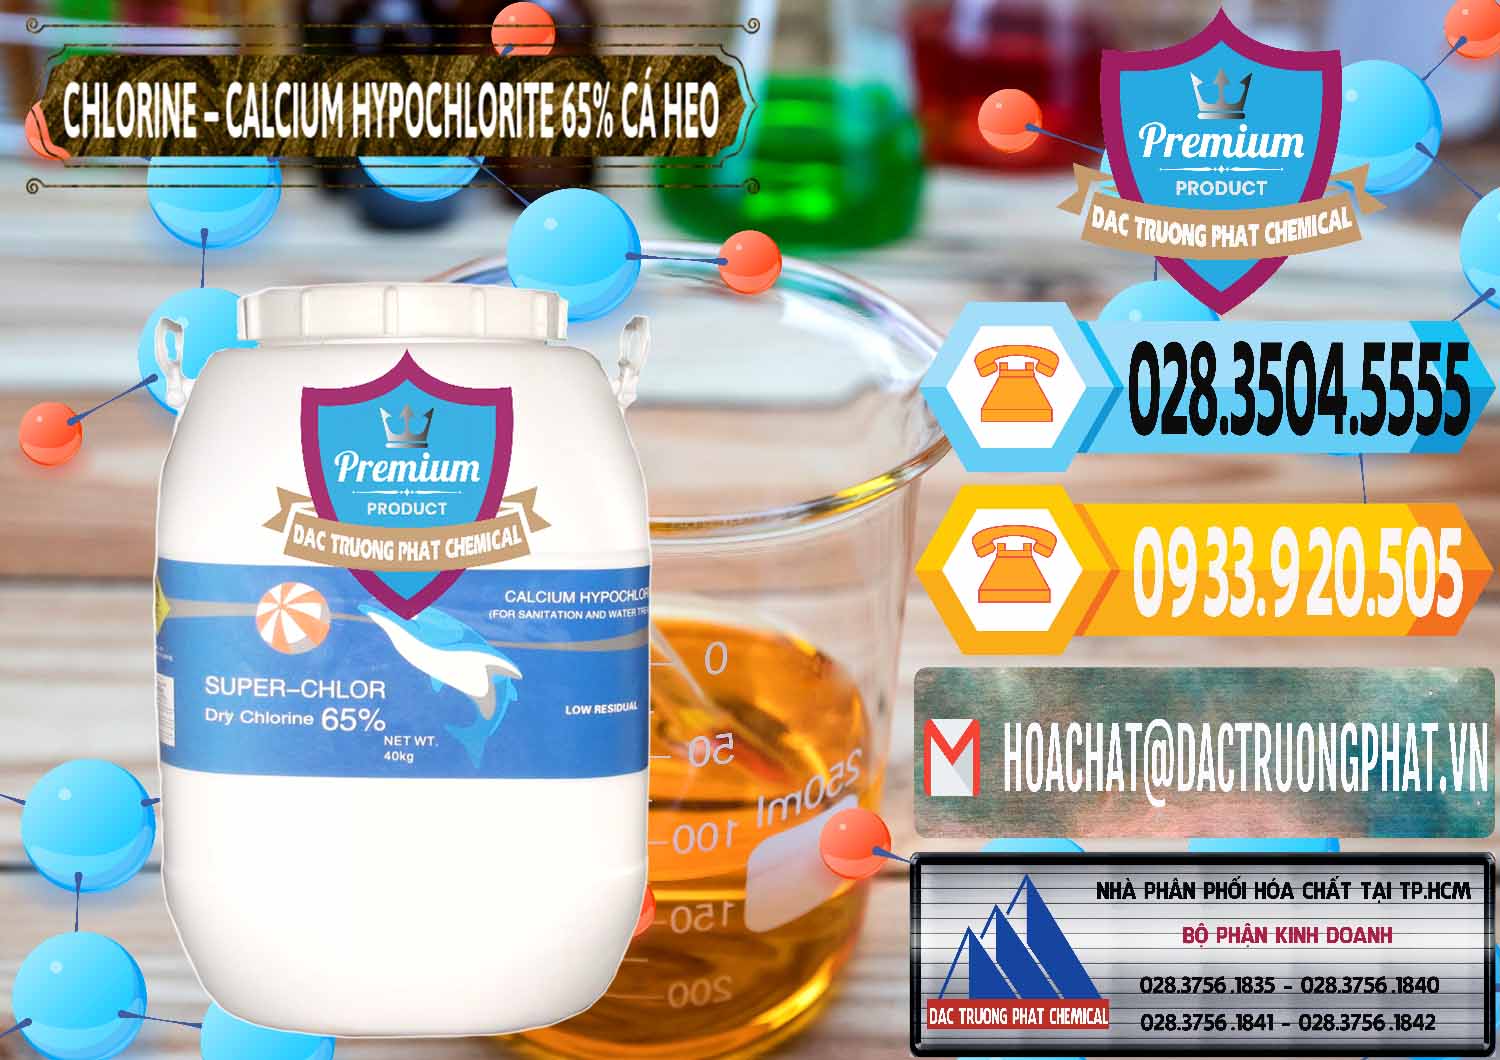 Cung cấp - bán Clorin - Chlorine Cá Heo 65% Trung Quốc China - 0053 - Công ty chuyên kinh doanh - cung cấp hóa chất tại TP.HCM - hoachattayrua.net